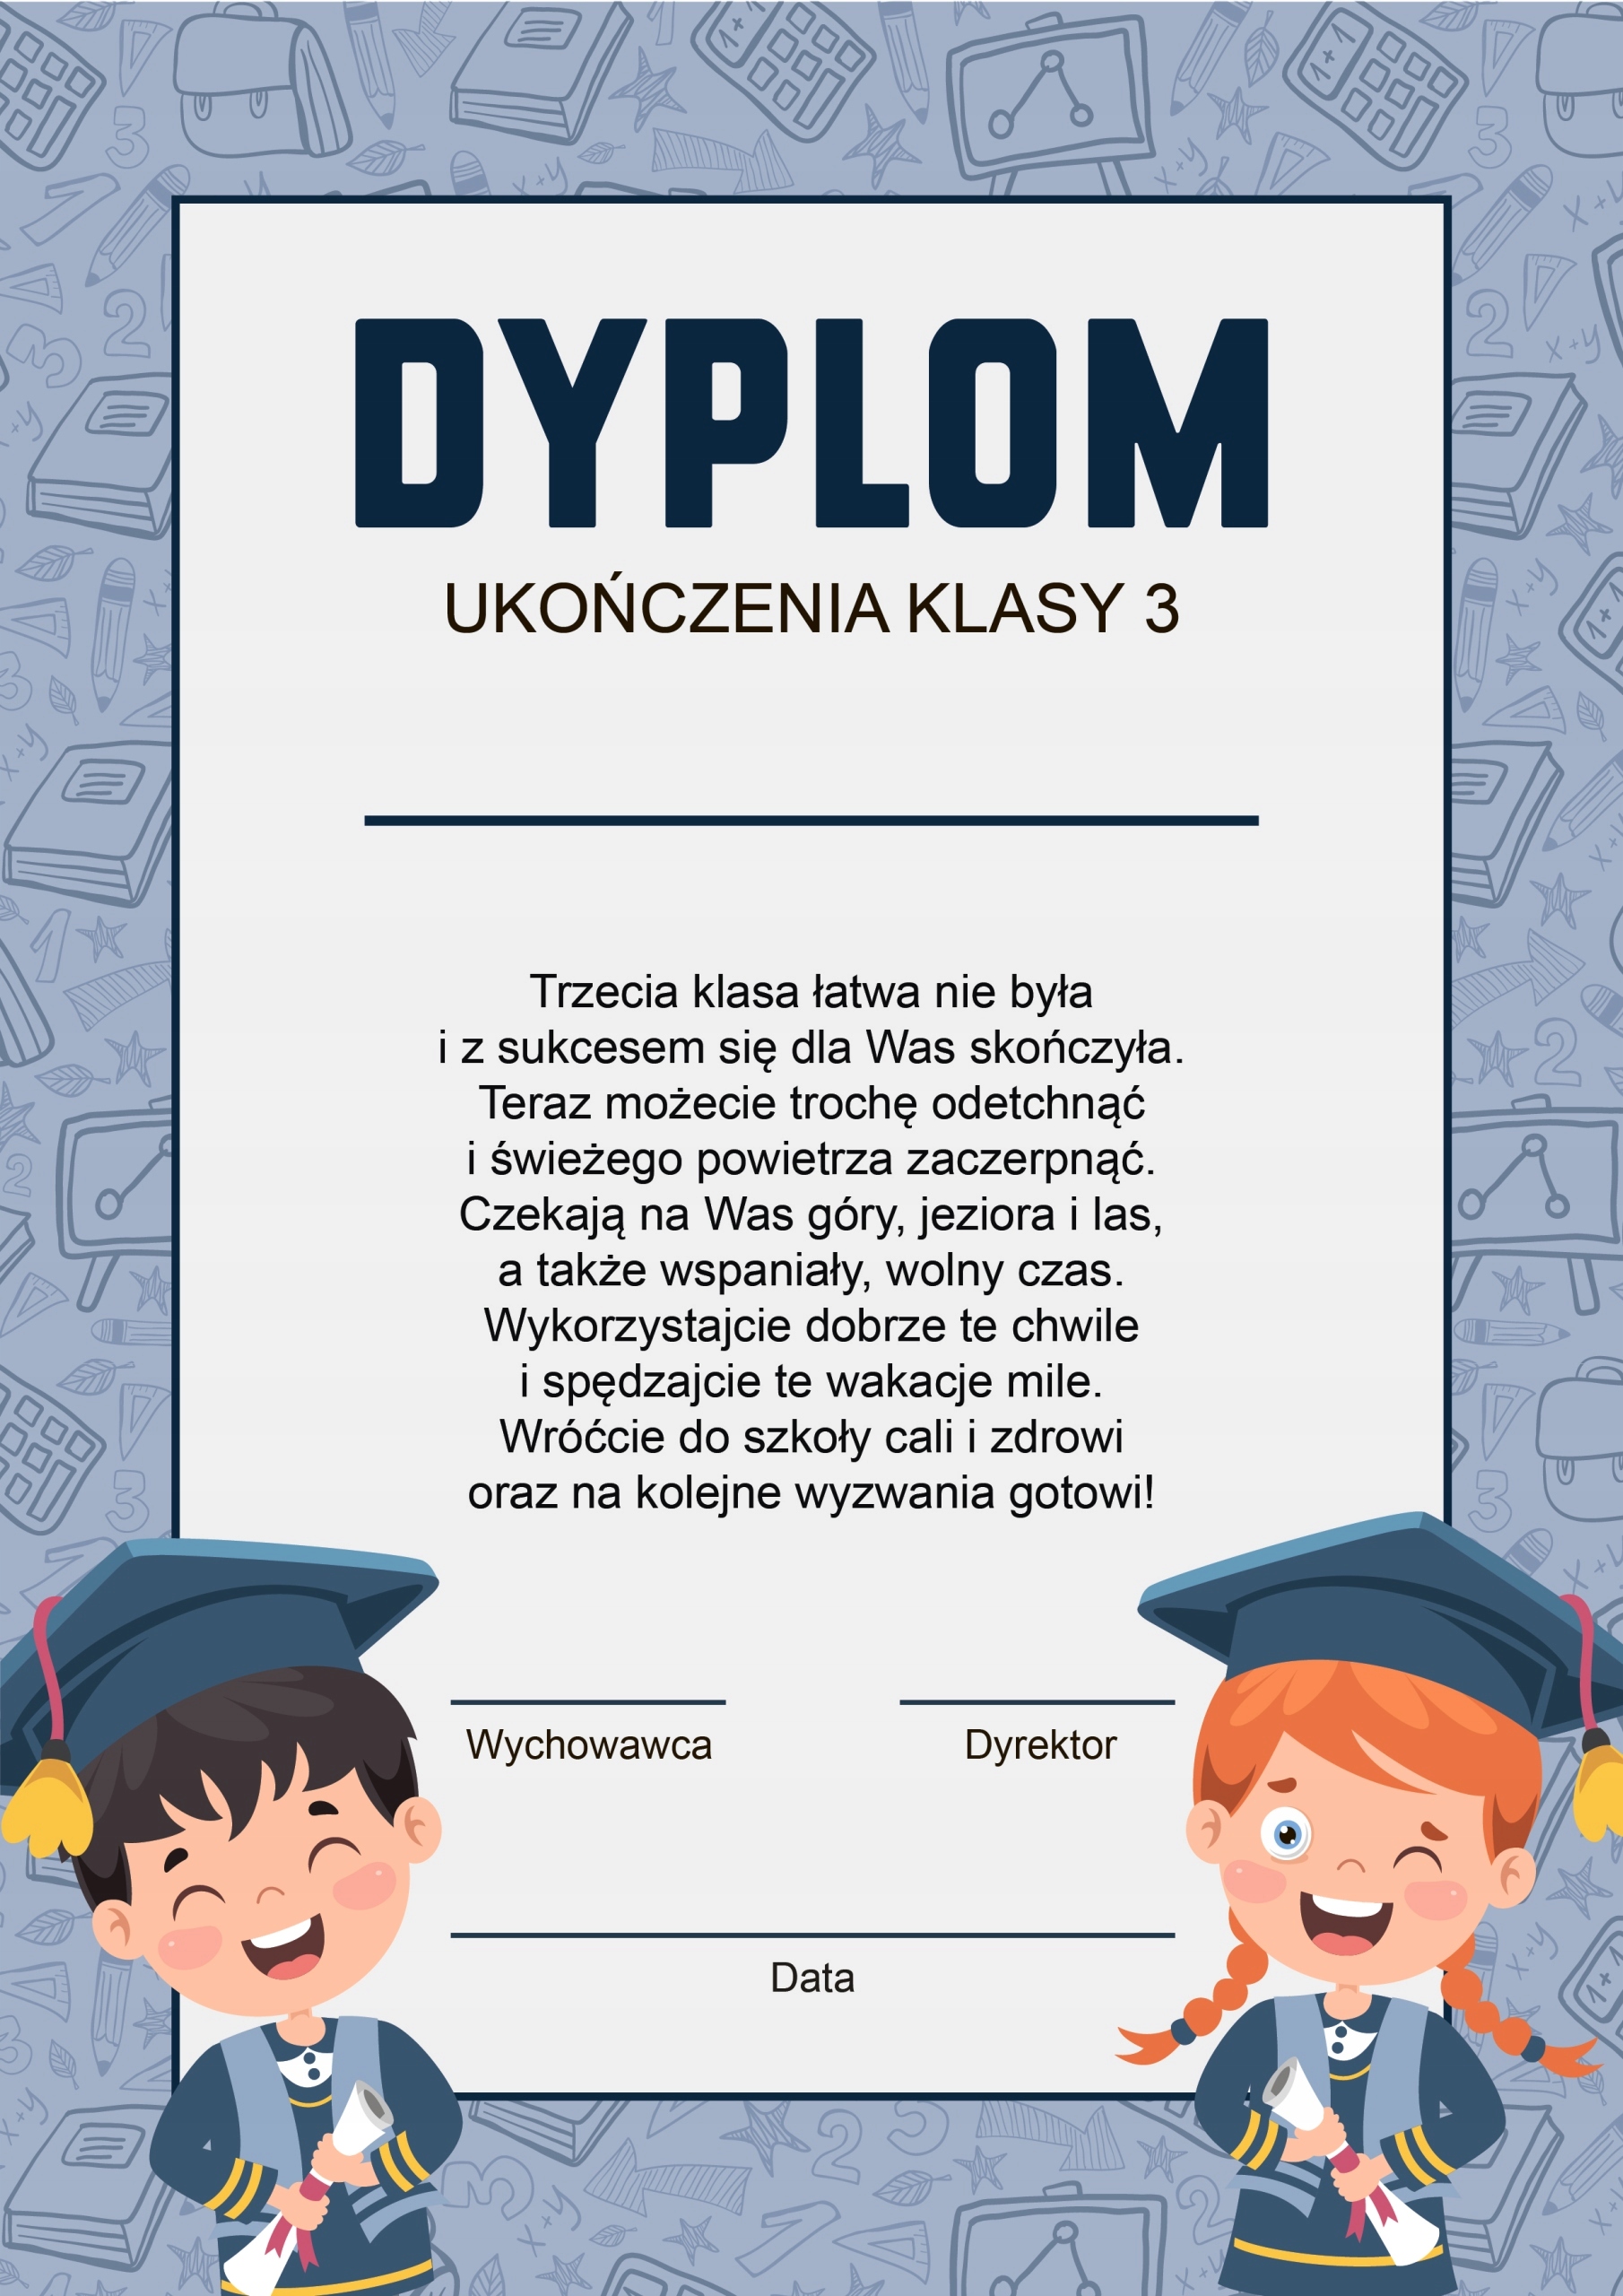 DYPLOM UKOŃCZENIA KLASY 3 wz. 2